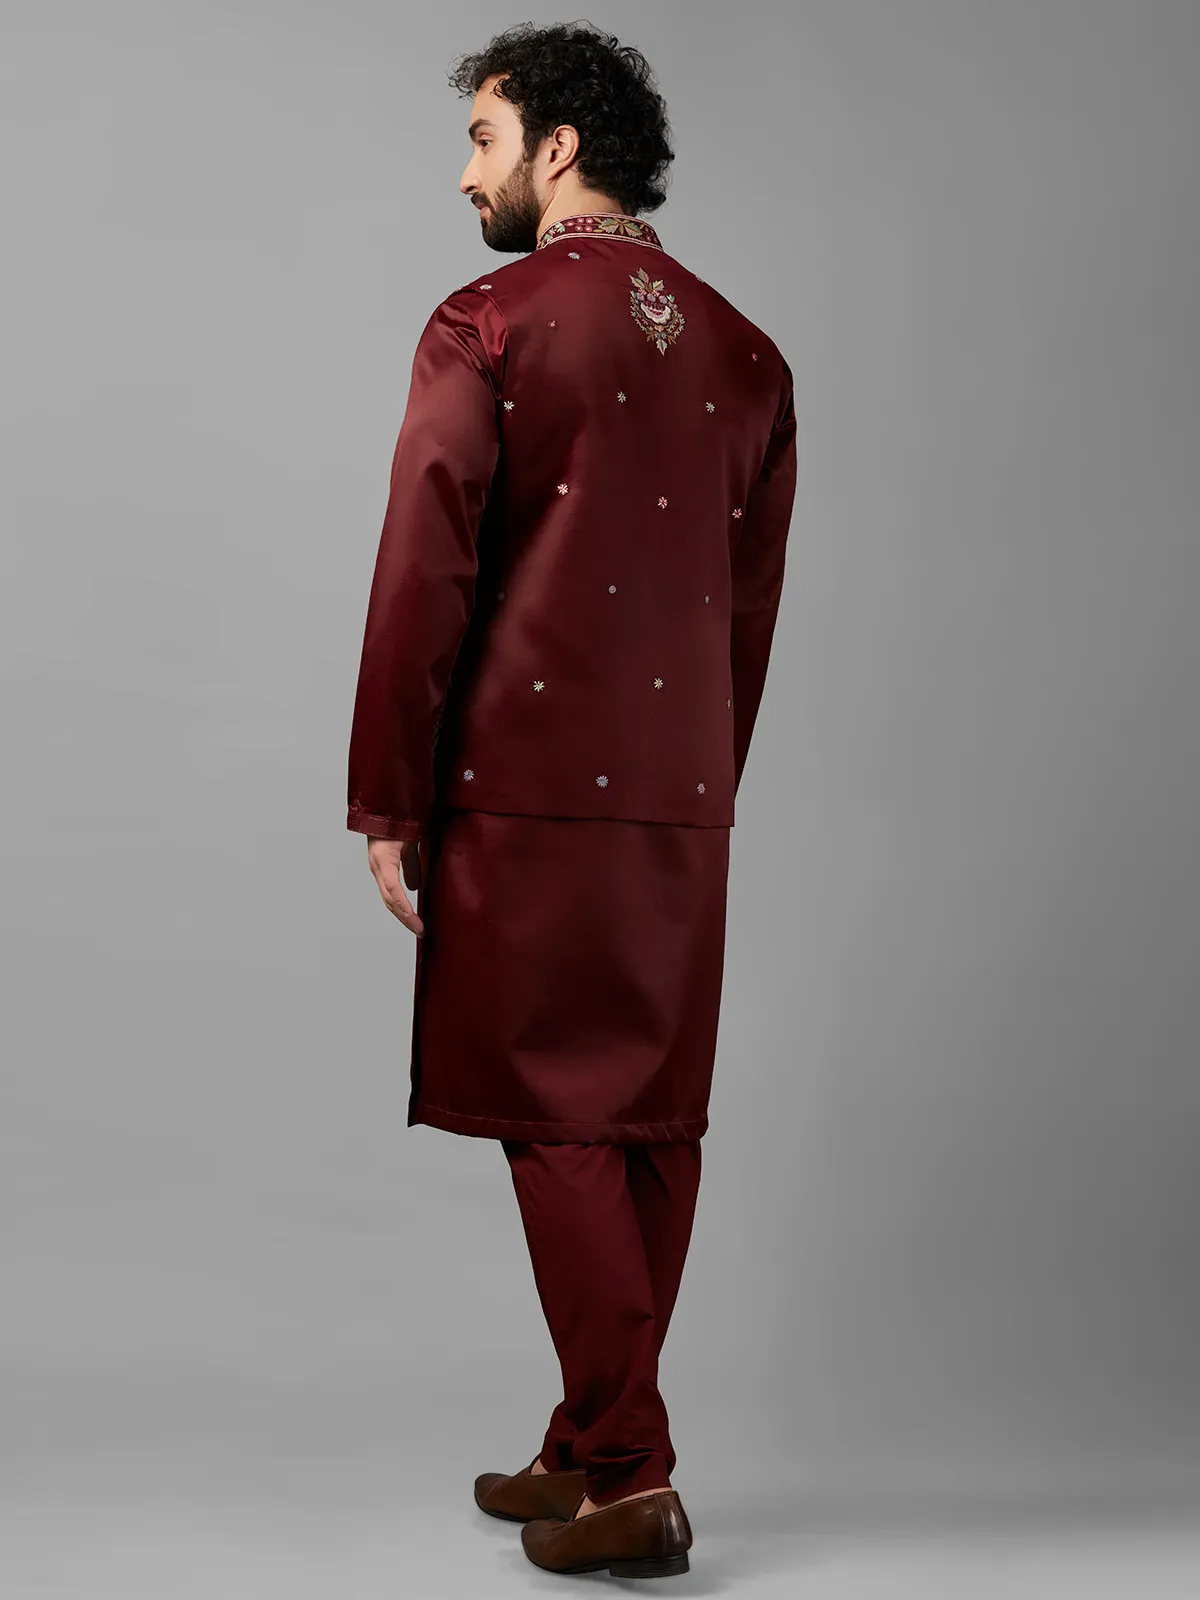 Shiny maroon silk waistcoat set